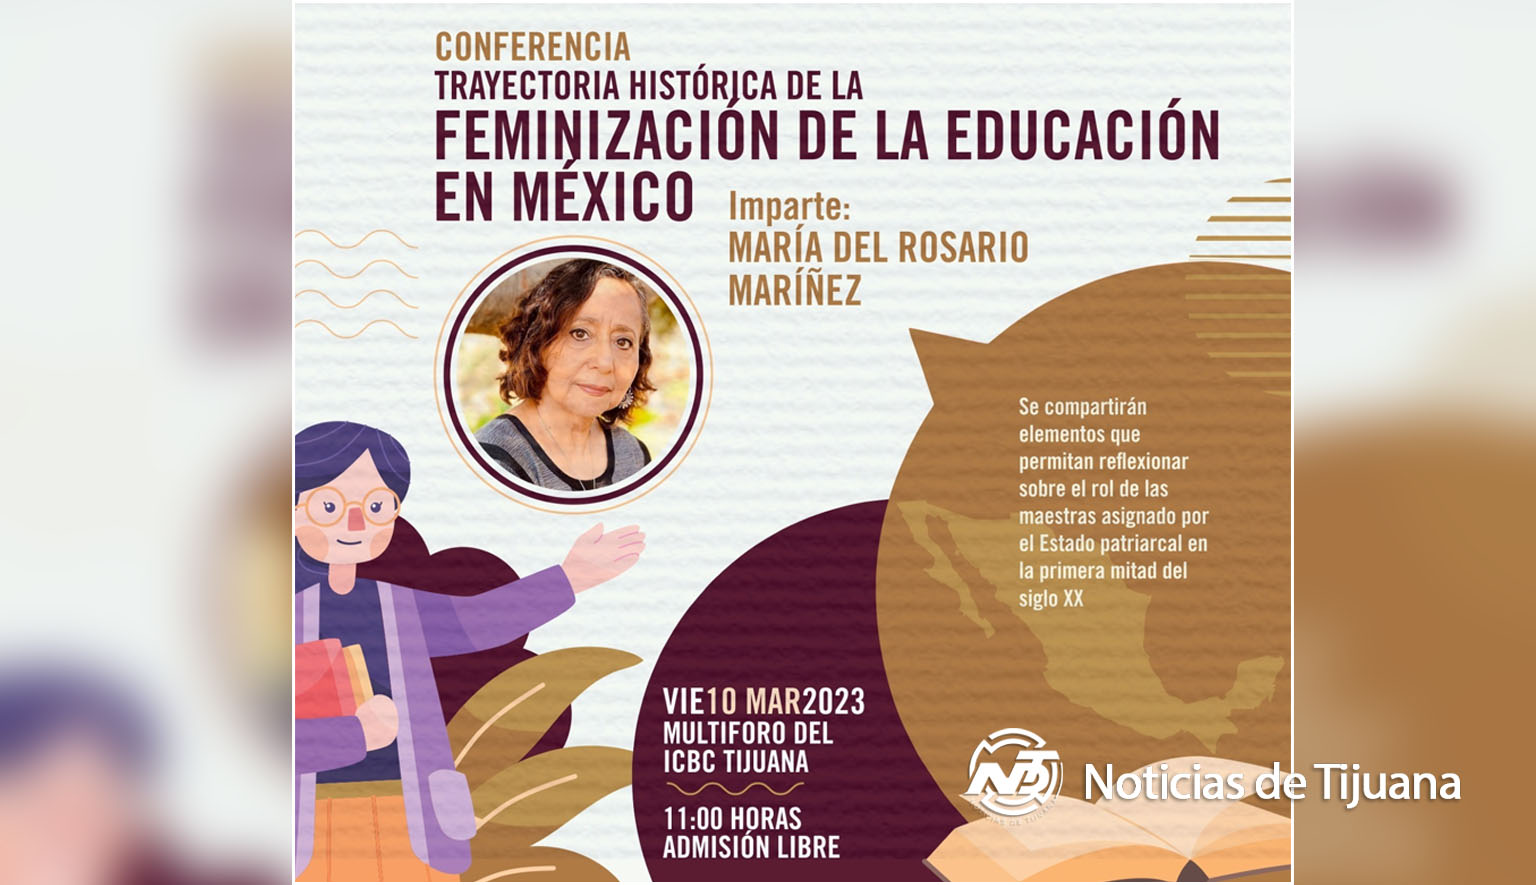 Invitación a la conferencia “Trayectoria Histórica de la Feminización de la Educación en México”